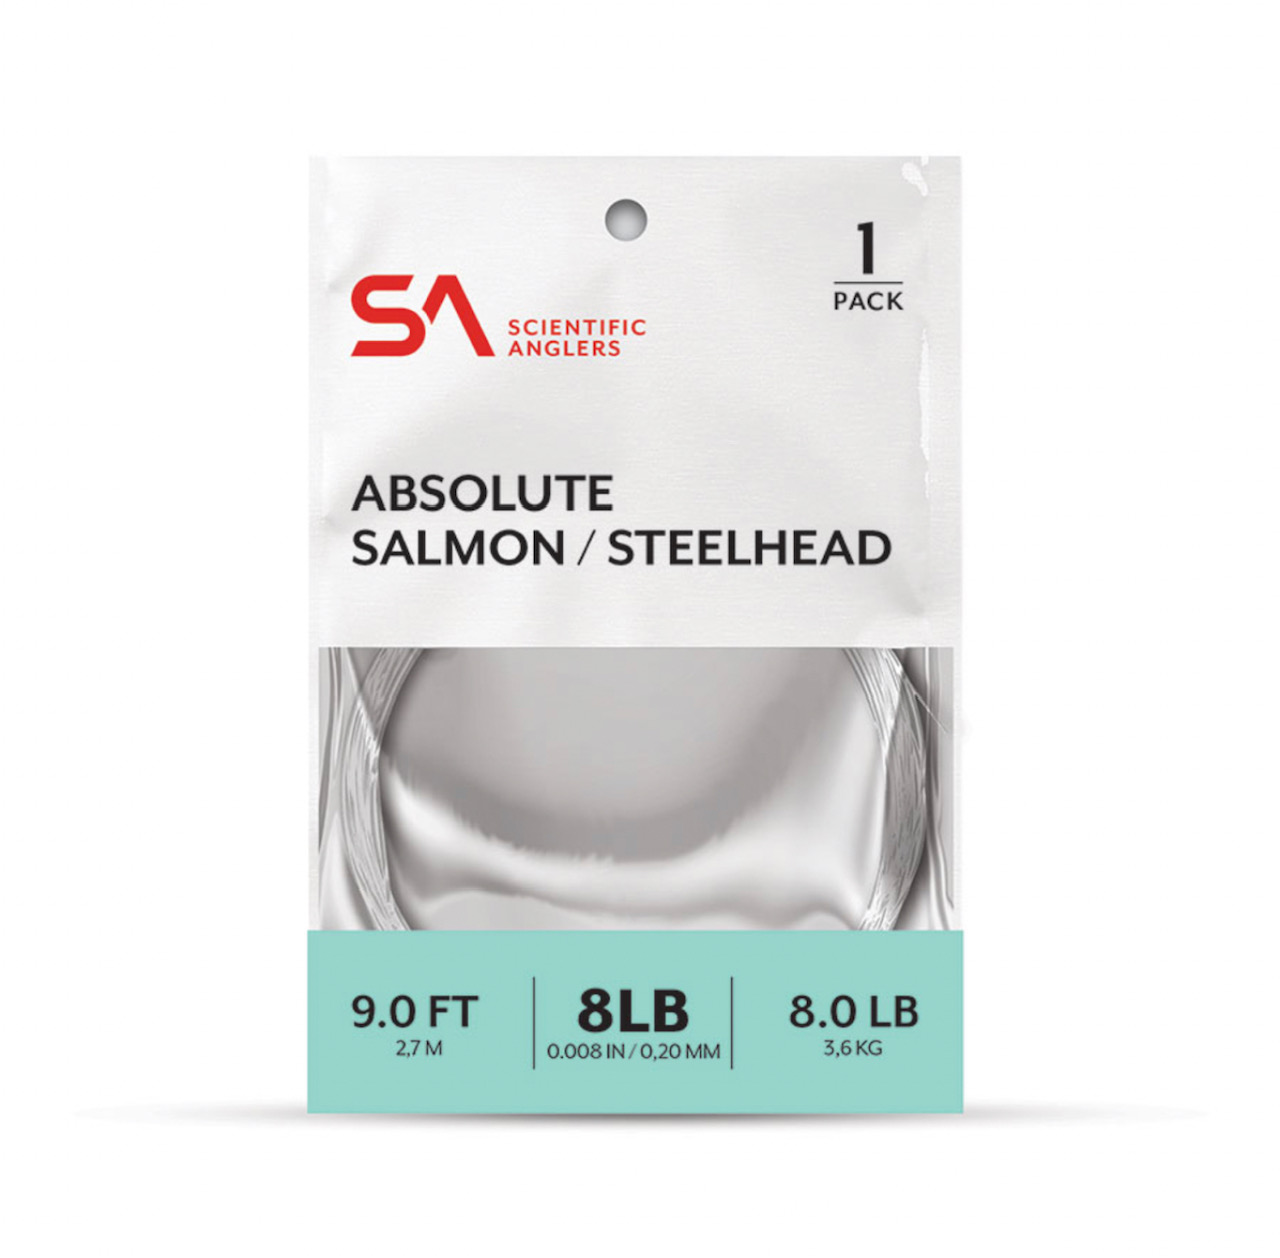 Absolute Salmon / Steelhead